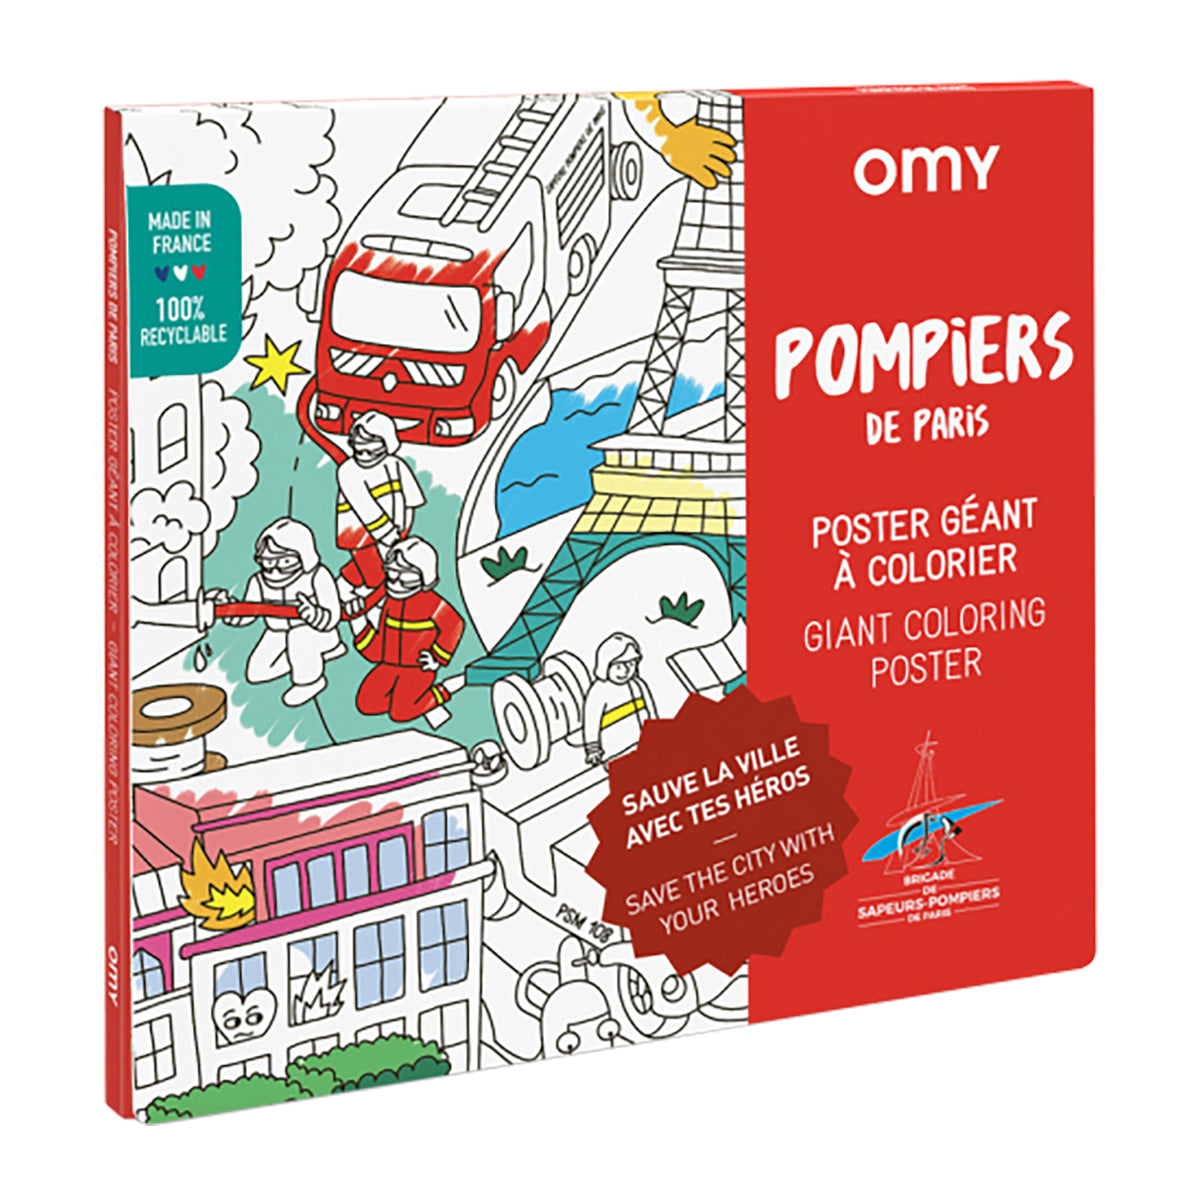 Poster Géant à colorier POMPIERS by OMY